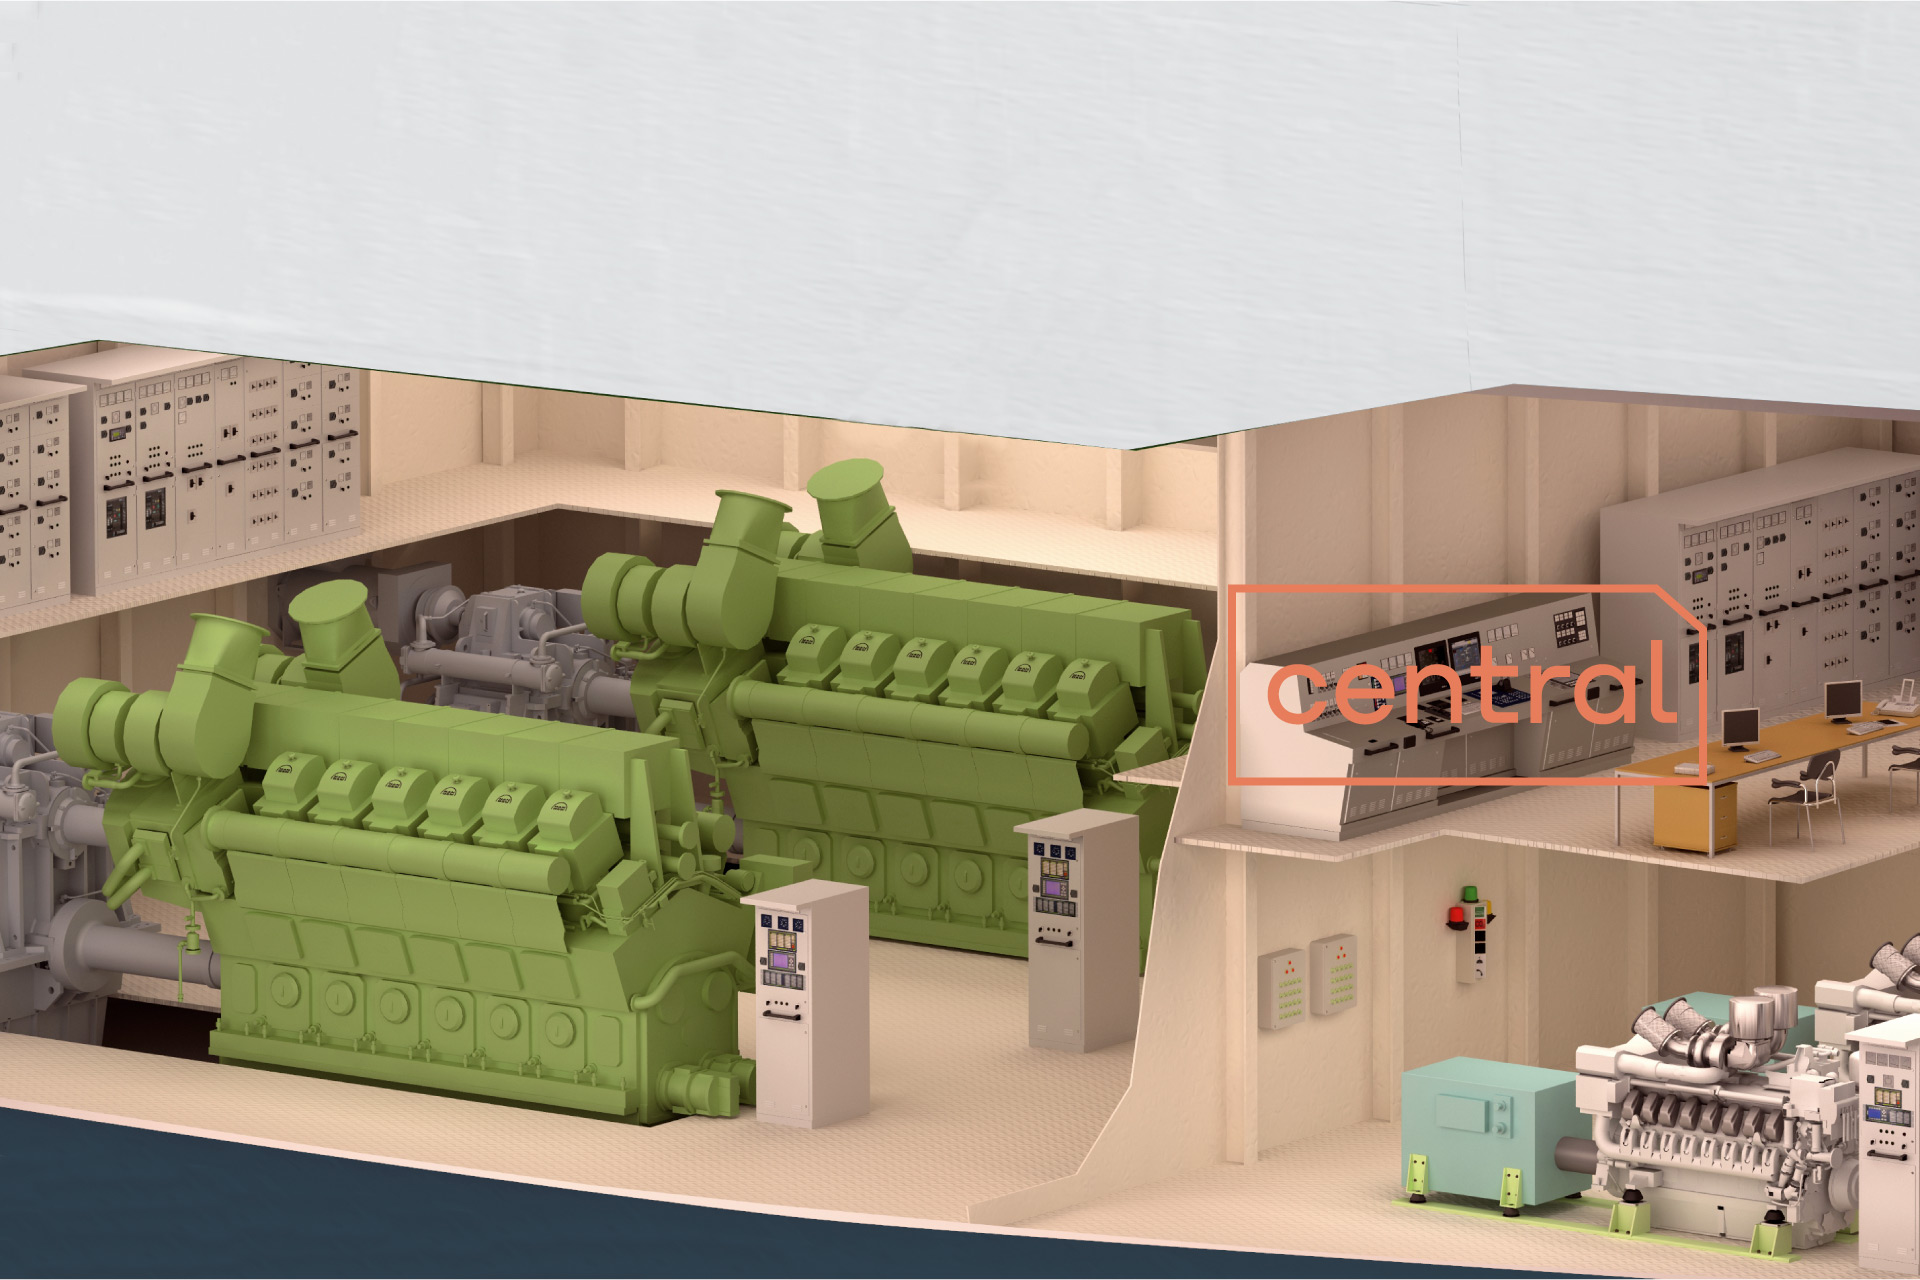 Das Bild zeigt ein 3D Modell eines Querschnittes eines Maschinenraums und Maschinenkontrollraums mit dem Wort "Zentral" darauf.